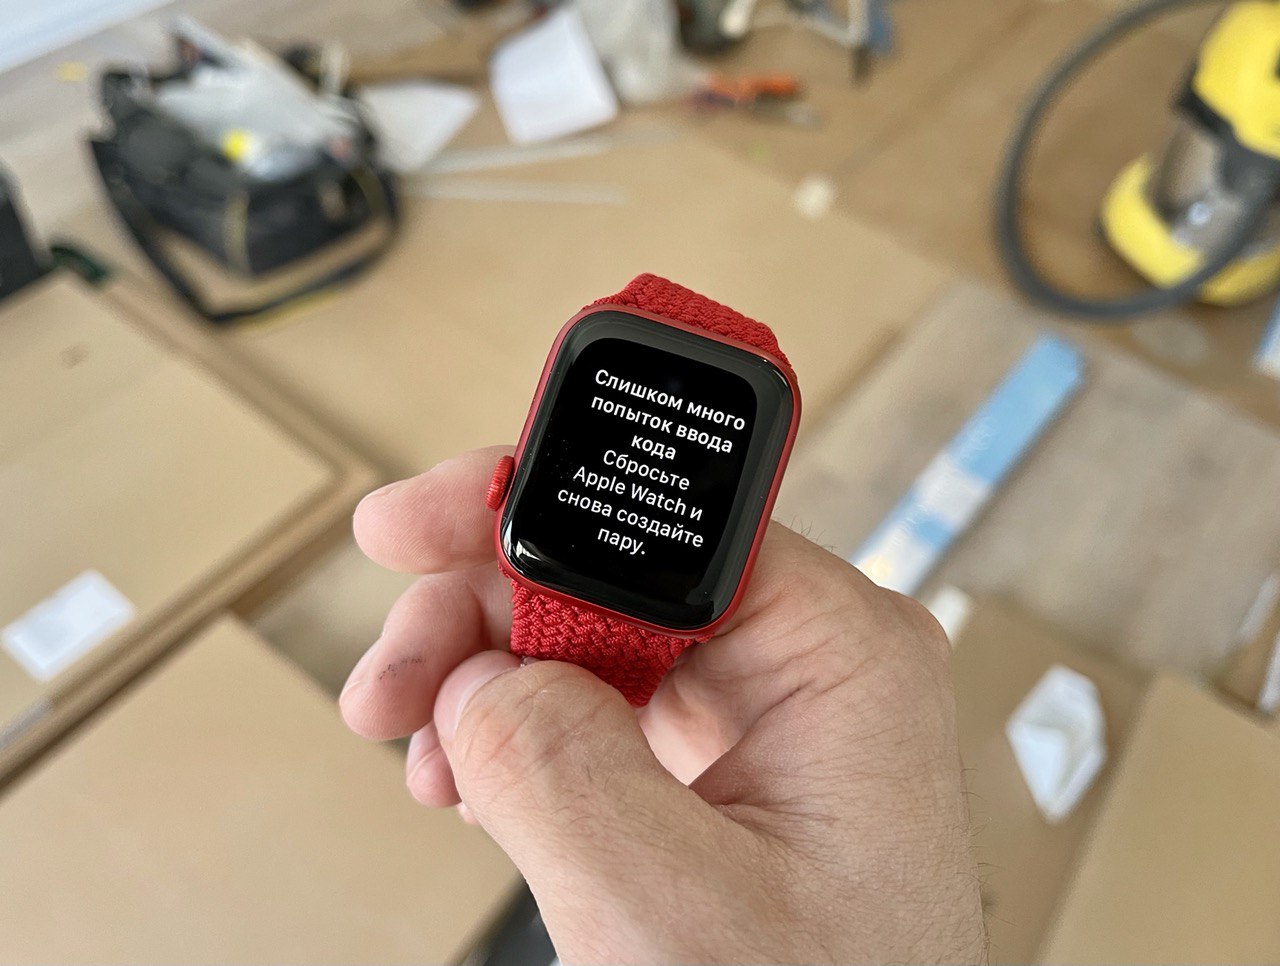 Не кладите включенные Apple Watch в карман, иначе будет вот так